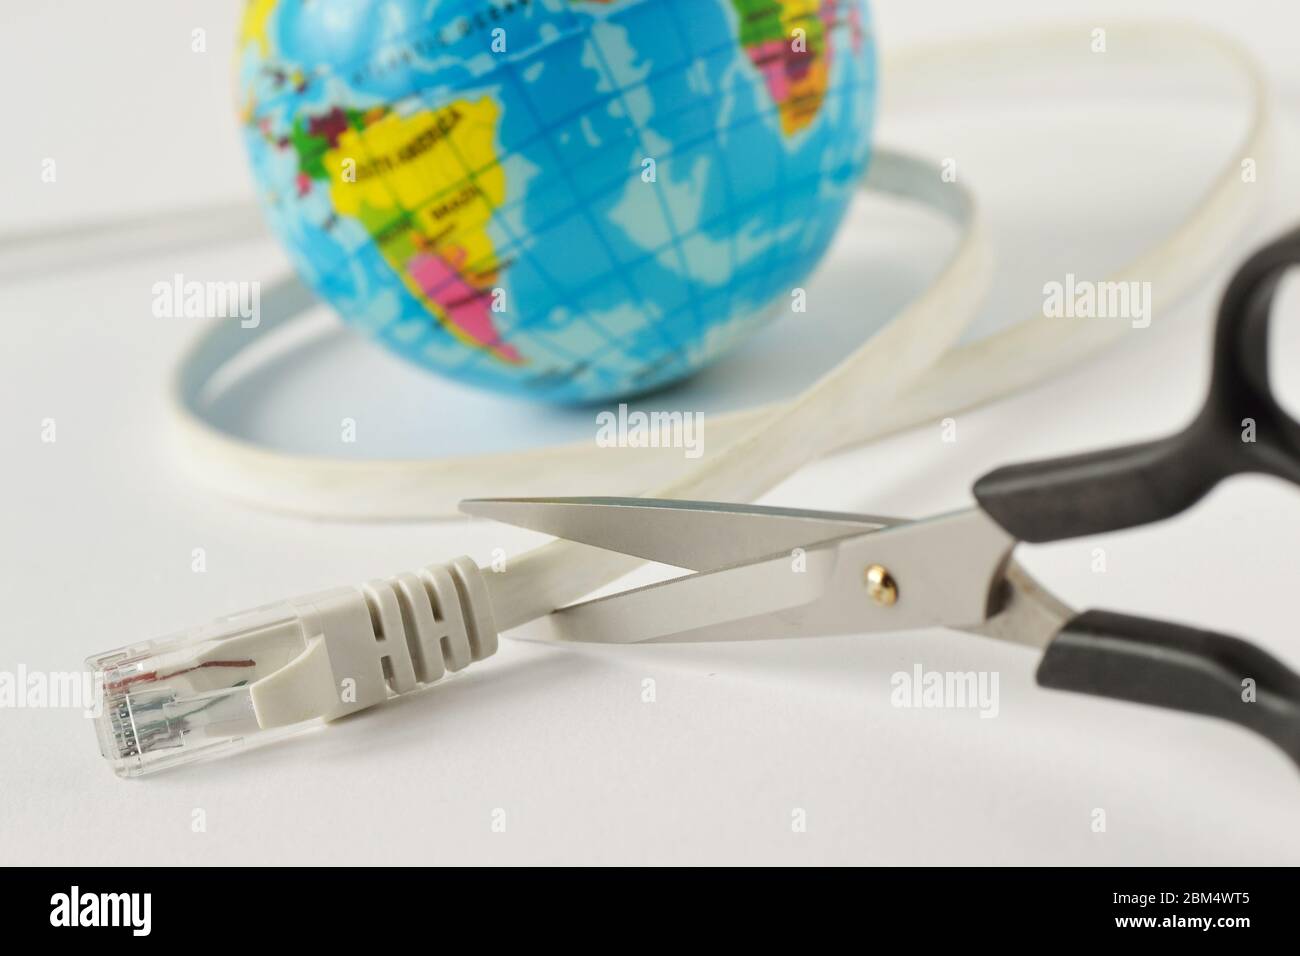 Schere schneiden Internet-Kabel mit Planet Erde auf weißem Hintergrund - Konzept der globalen Internet-Ausfall Stockfoto